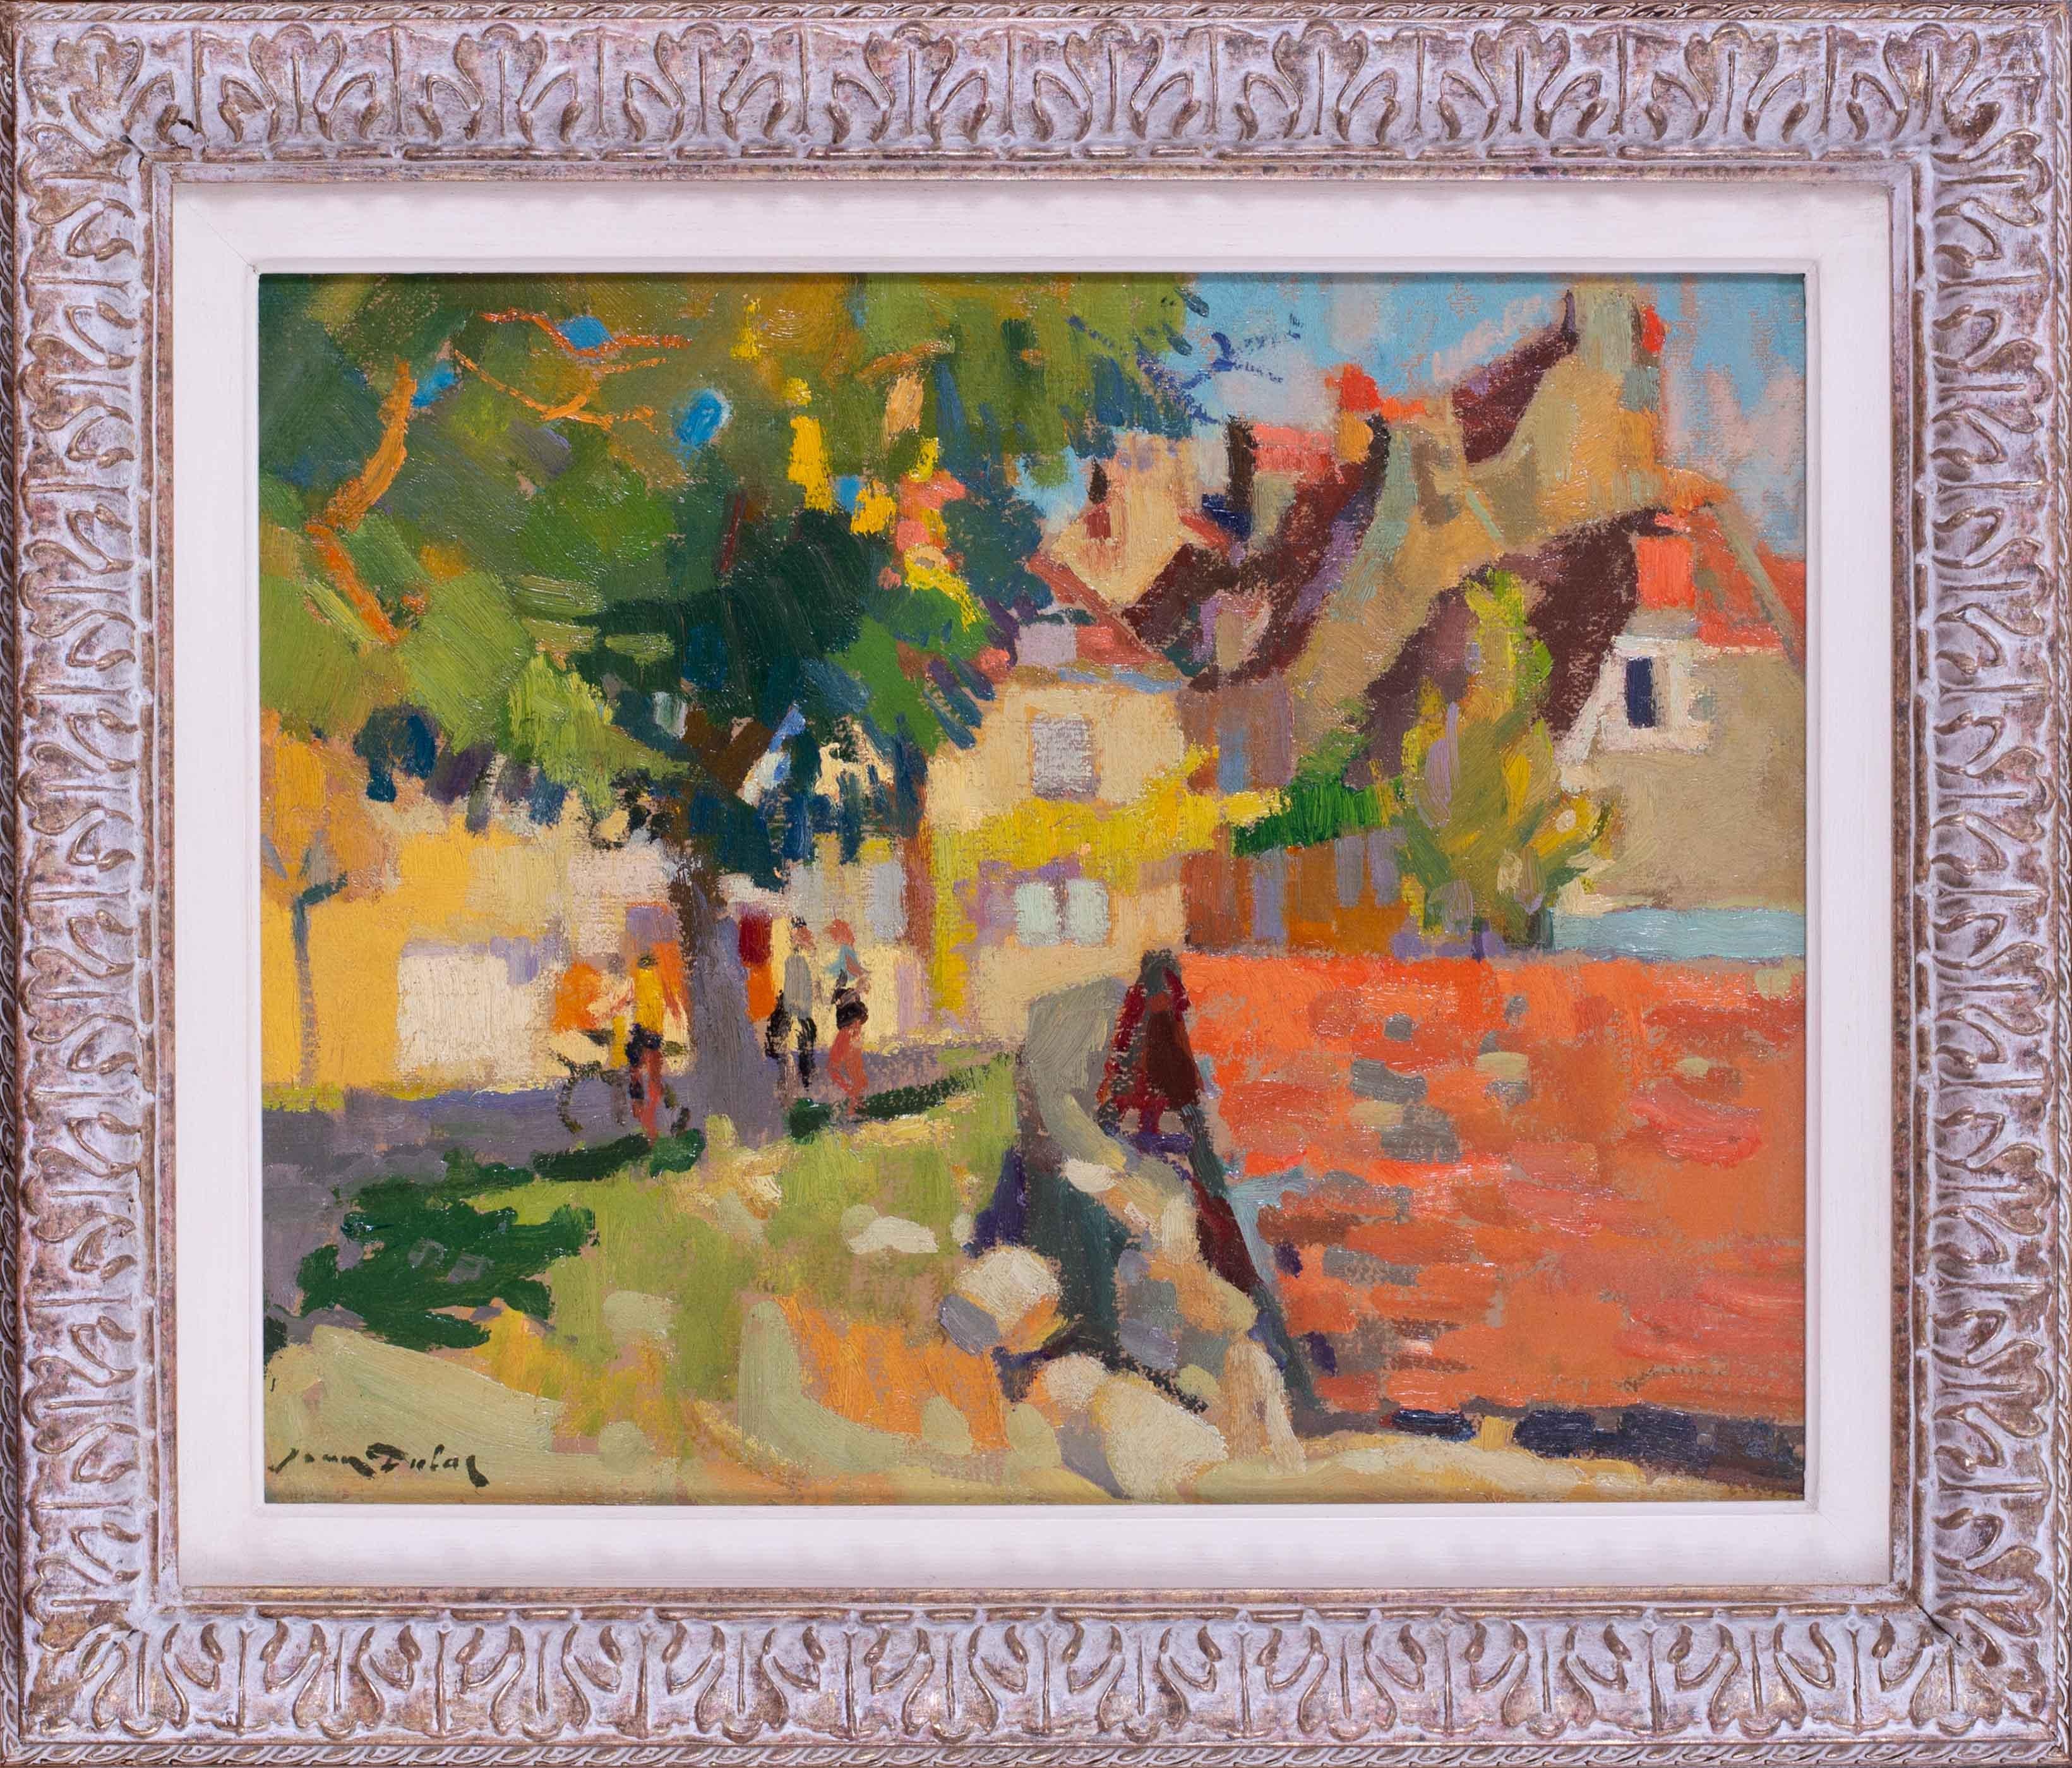 Ein sehr attraktives postimpressionistisches Landschaftsgemälde von Menschen in einem Dorf des Lyonnaiser Künstlers Jean Dulac.

Jean Dulac wurde in Bourgoin geboren, lebte aber seit seinem fünften Lebensjahr lebenslang in Lyon. Sein Vater war